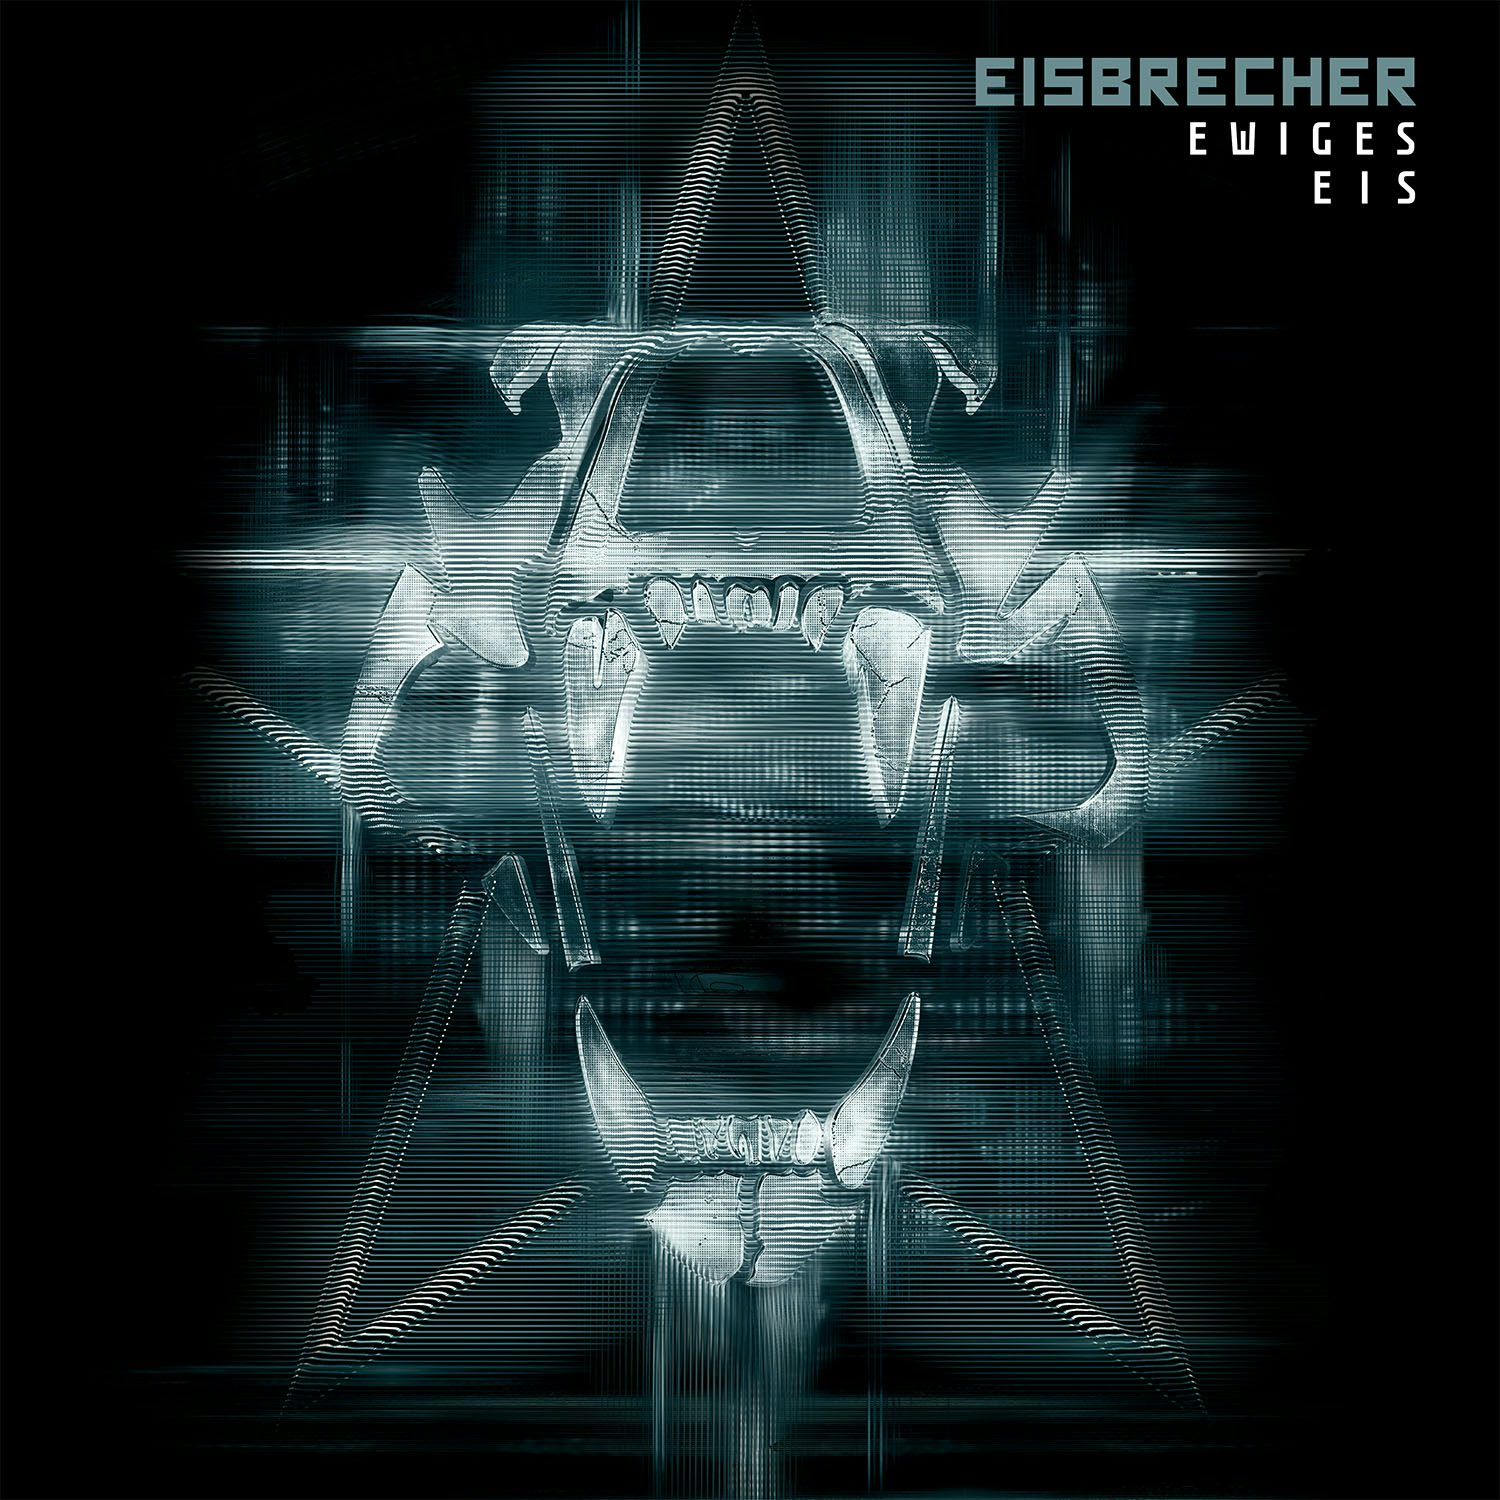 Eisbrecher rot. Группа Eisbrecher. Eisbrecher фото обложек. Солист группы Eisbrecher. Eisbrecher обложки альбомов.